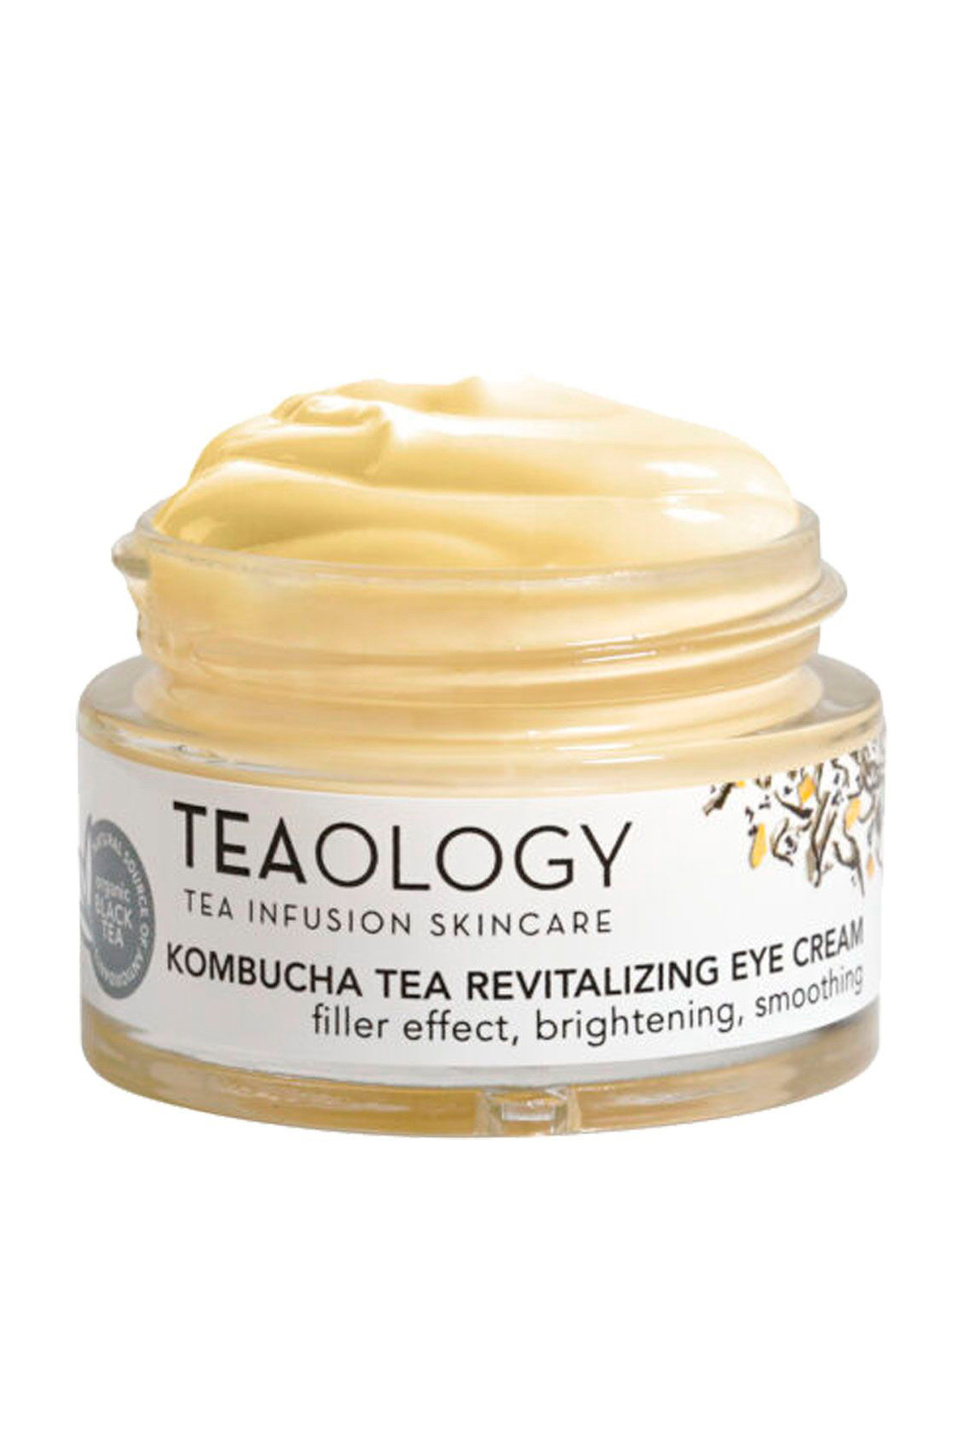 Не имеет пола Teaology Крем для кожи вокруз глаз восстанавливающий, с филлер эффектом с настоем черного чая, чайного гриба Kombucha Tea Revitalizing Eye Cream, 15 мл (цвет ), артикул T50518 | Фото 1